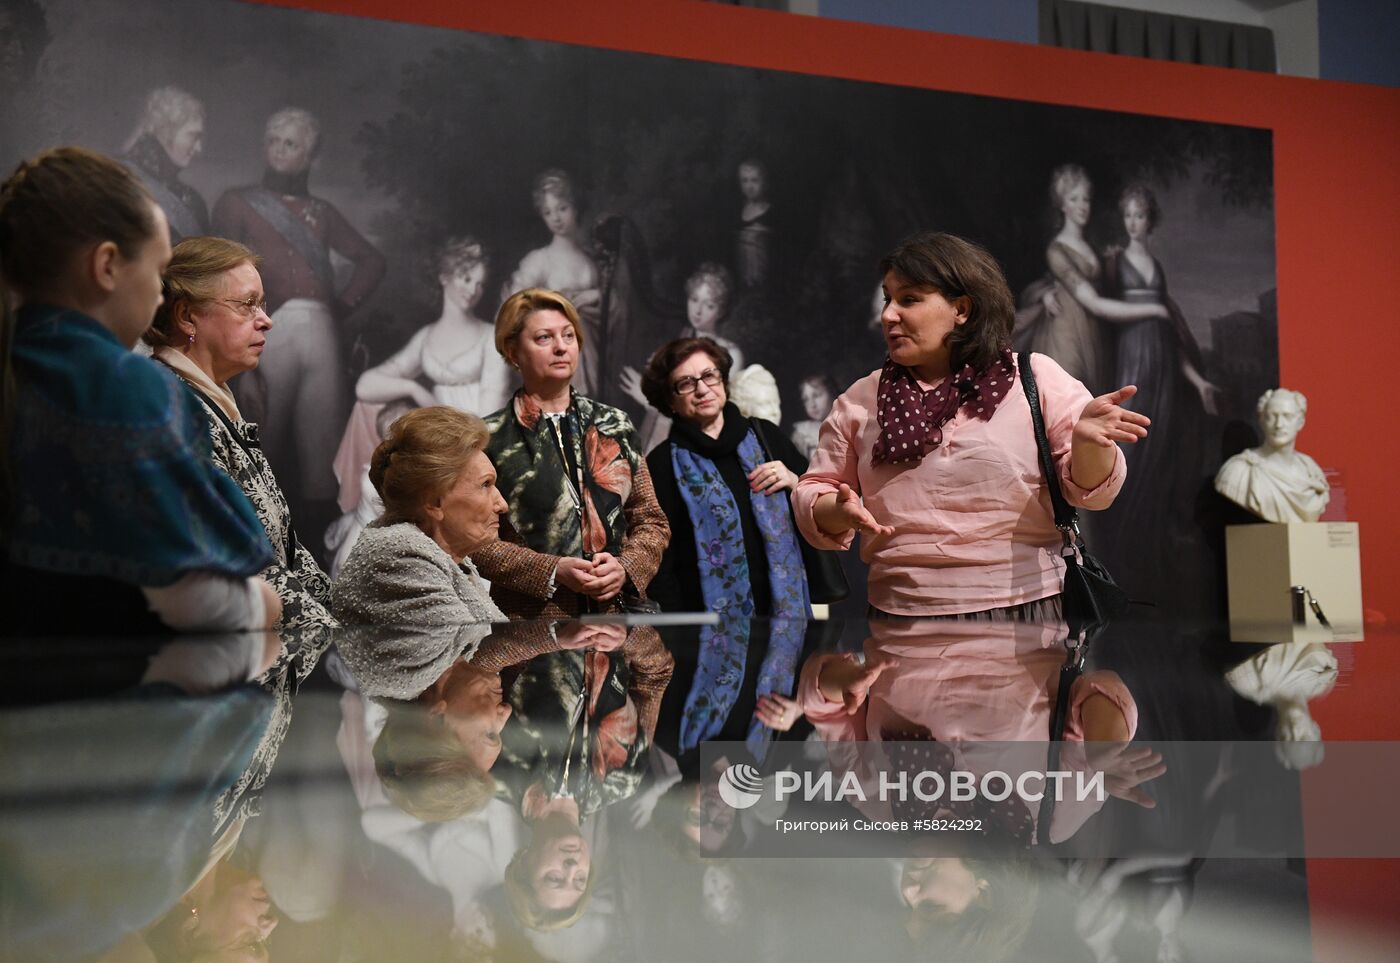 Выставка "Российская благотворительность под покровительством Императорского дома Романовых"